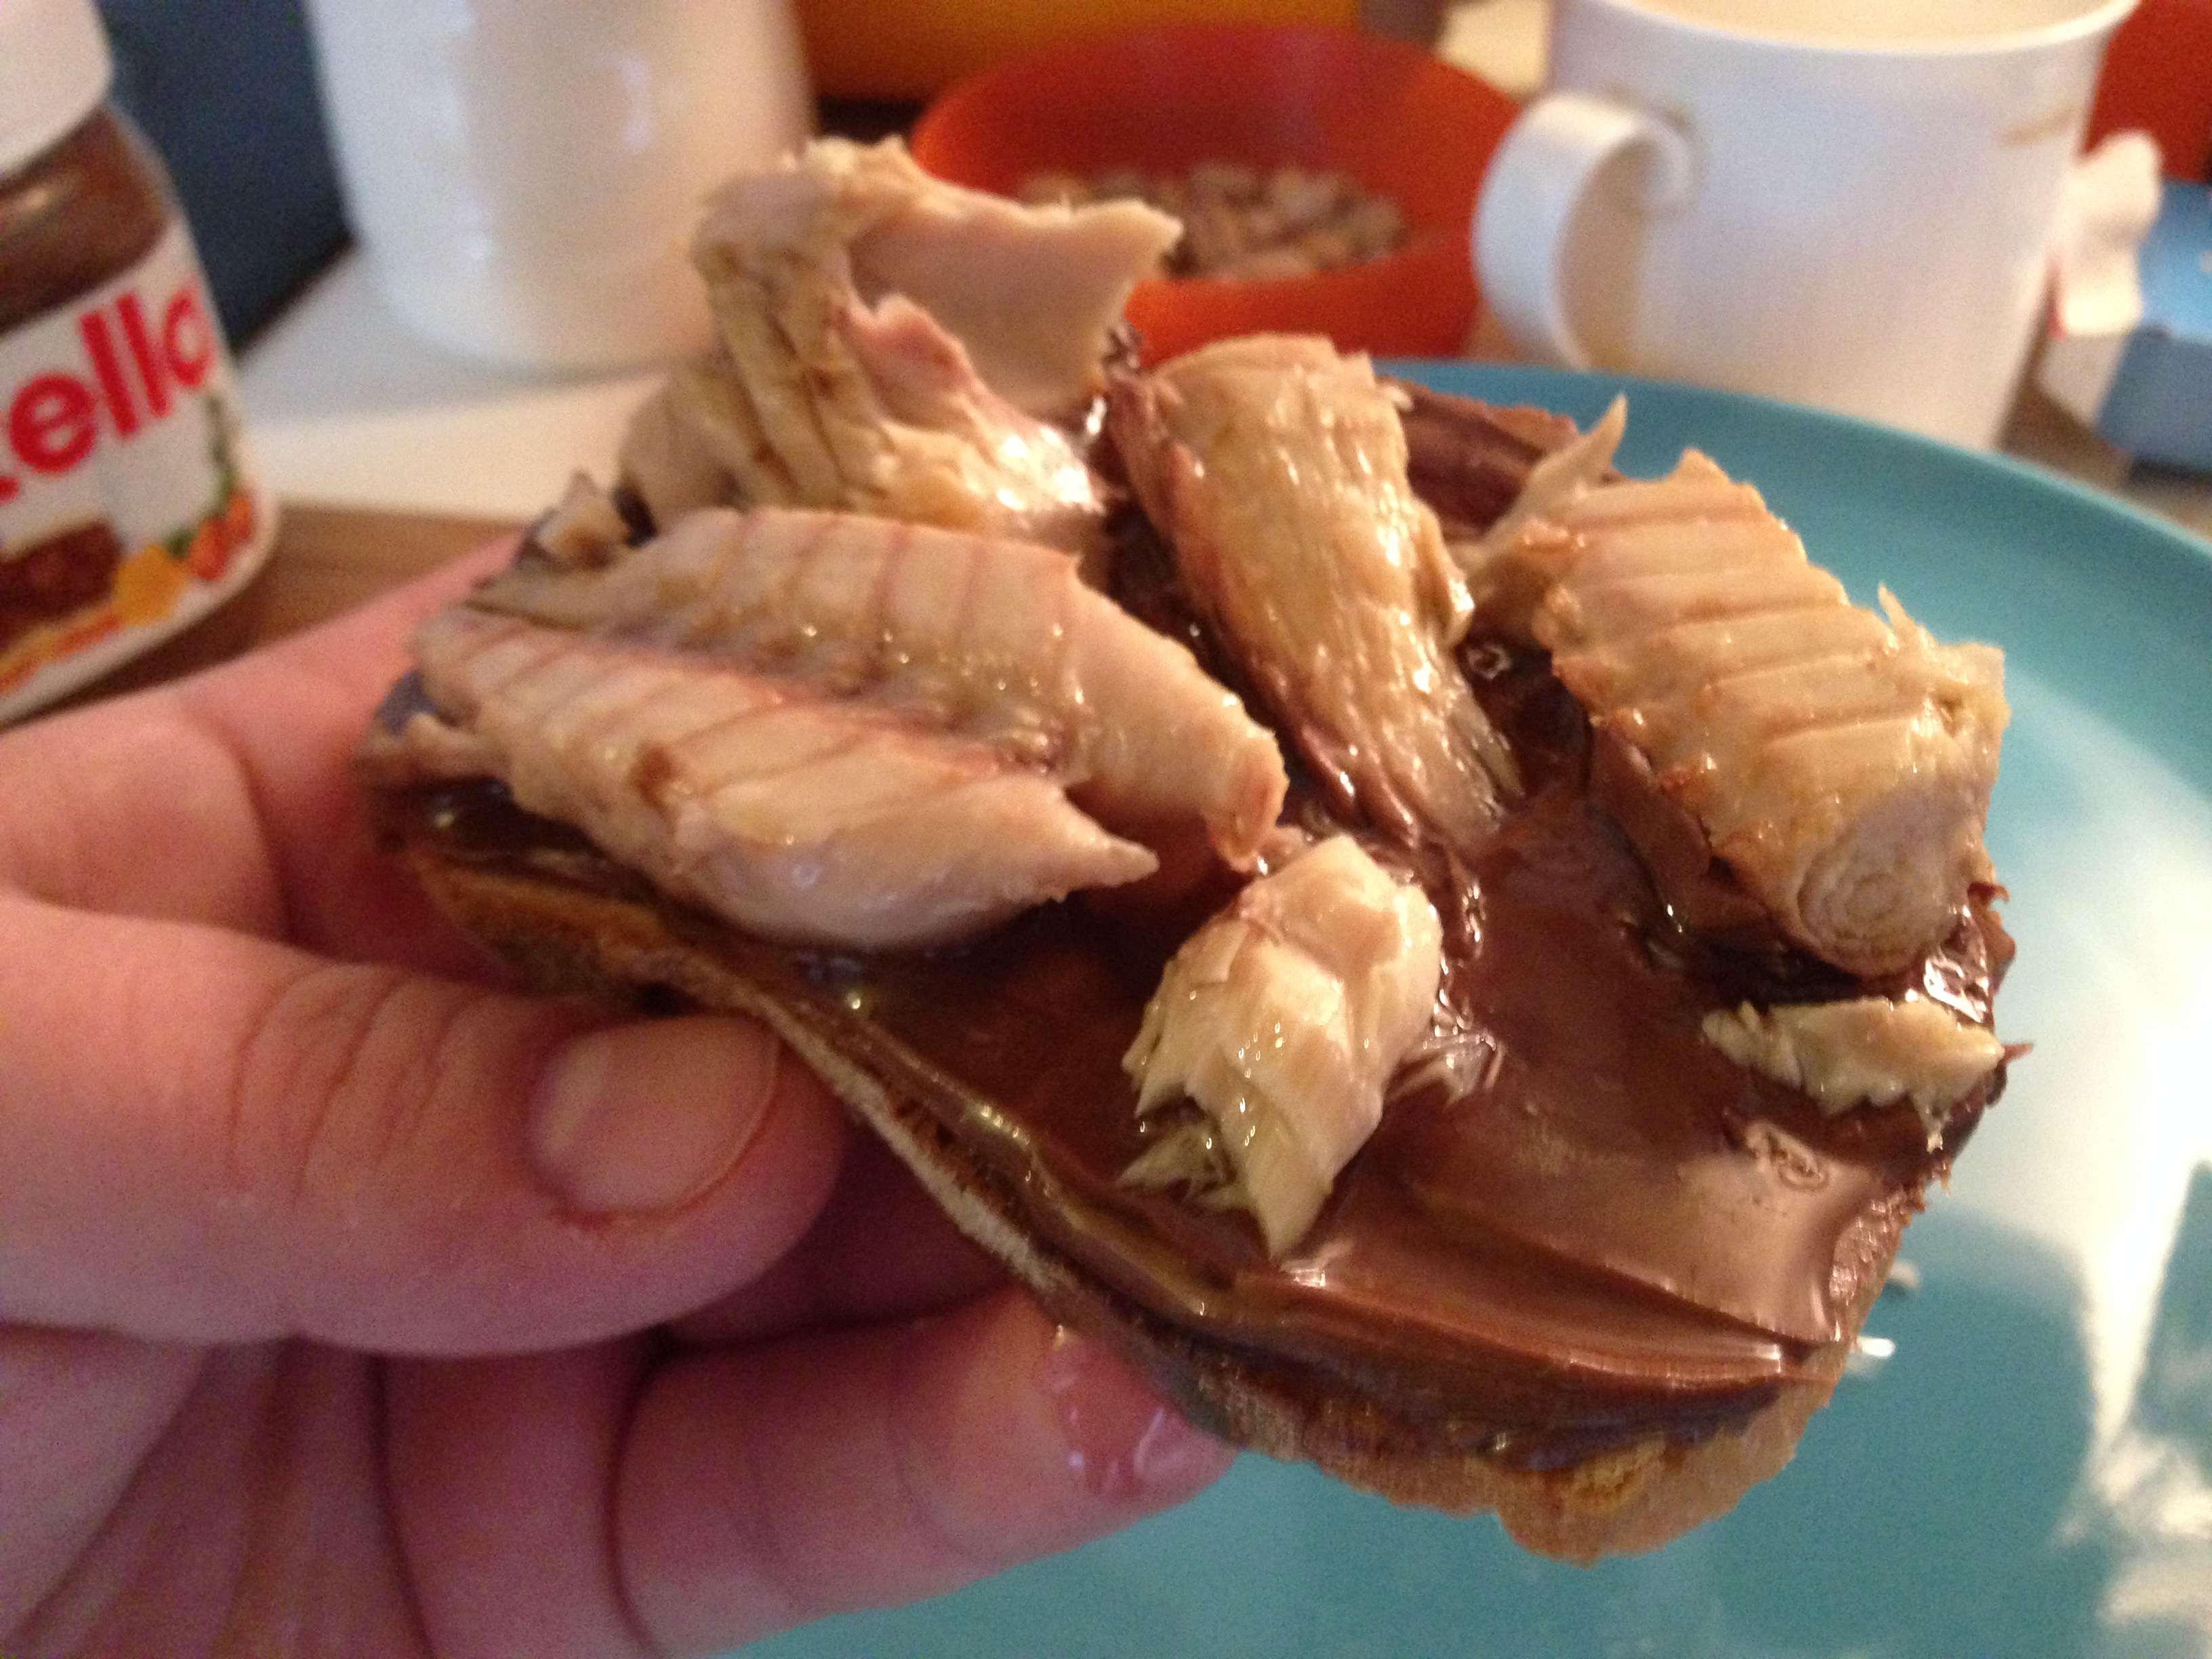 Kruh, nutella i sardine